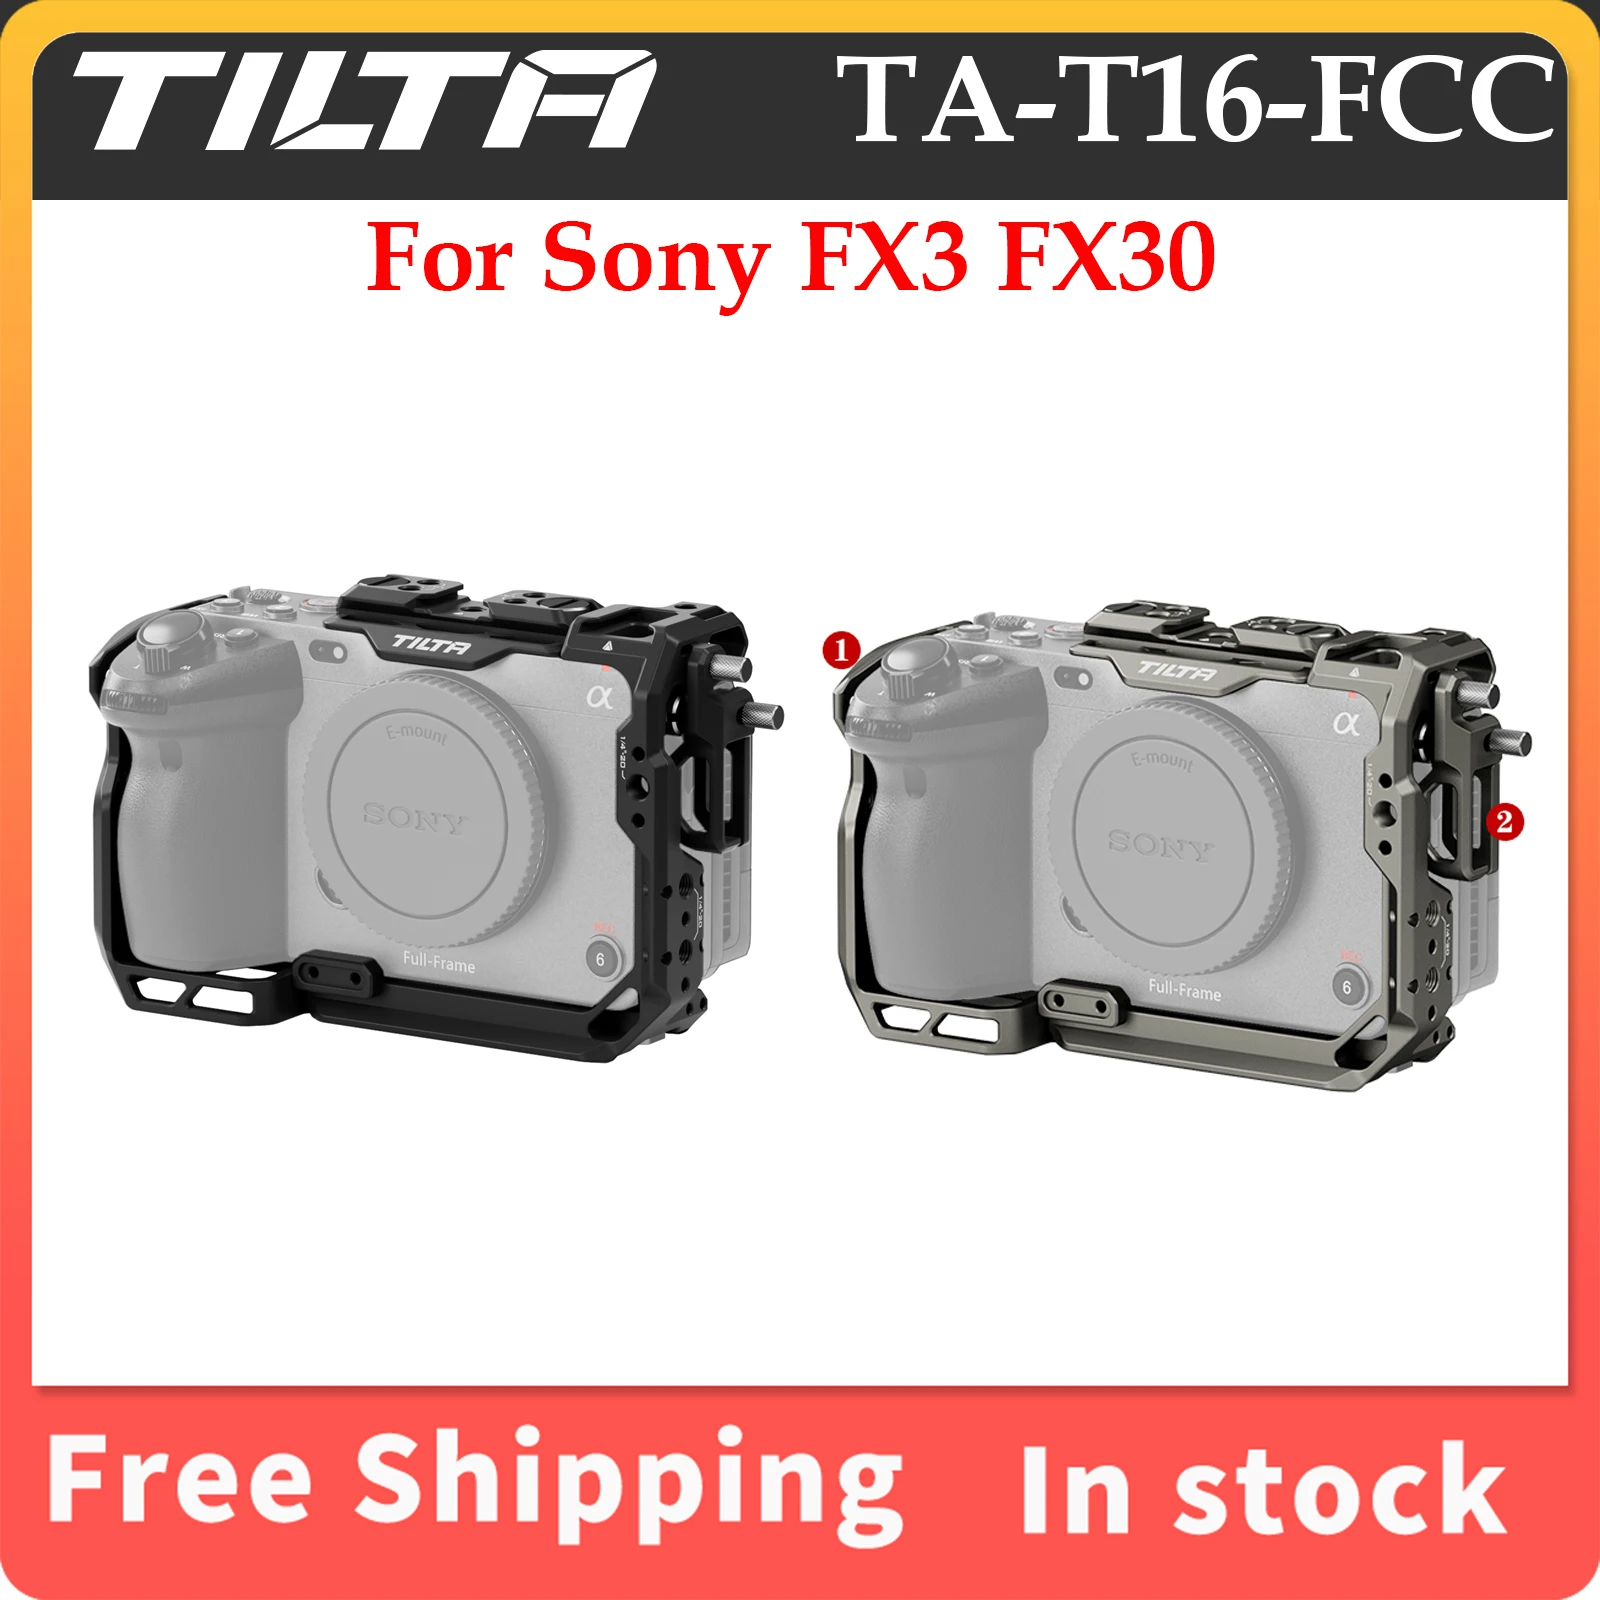 Пълна помещение TILTA TA-T16-FCC за комплект FX3 Pro/базов комплект FX30 Sony FX3/FX30, лека защитна броня . ' - ' . 1